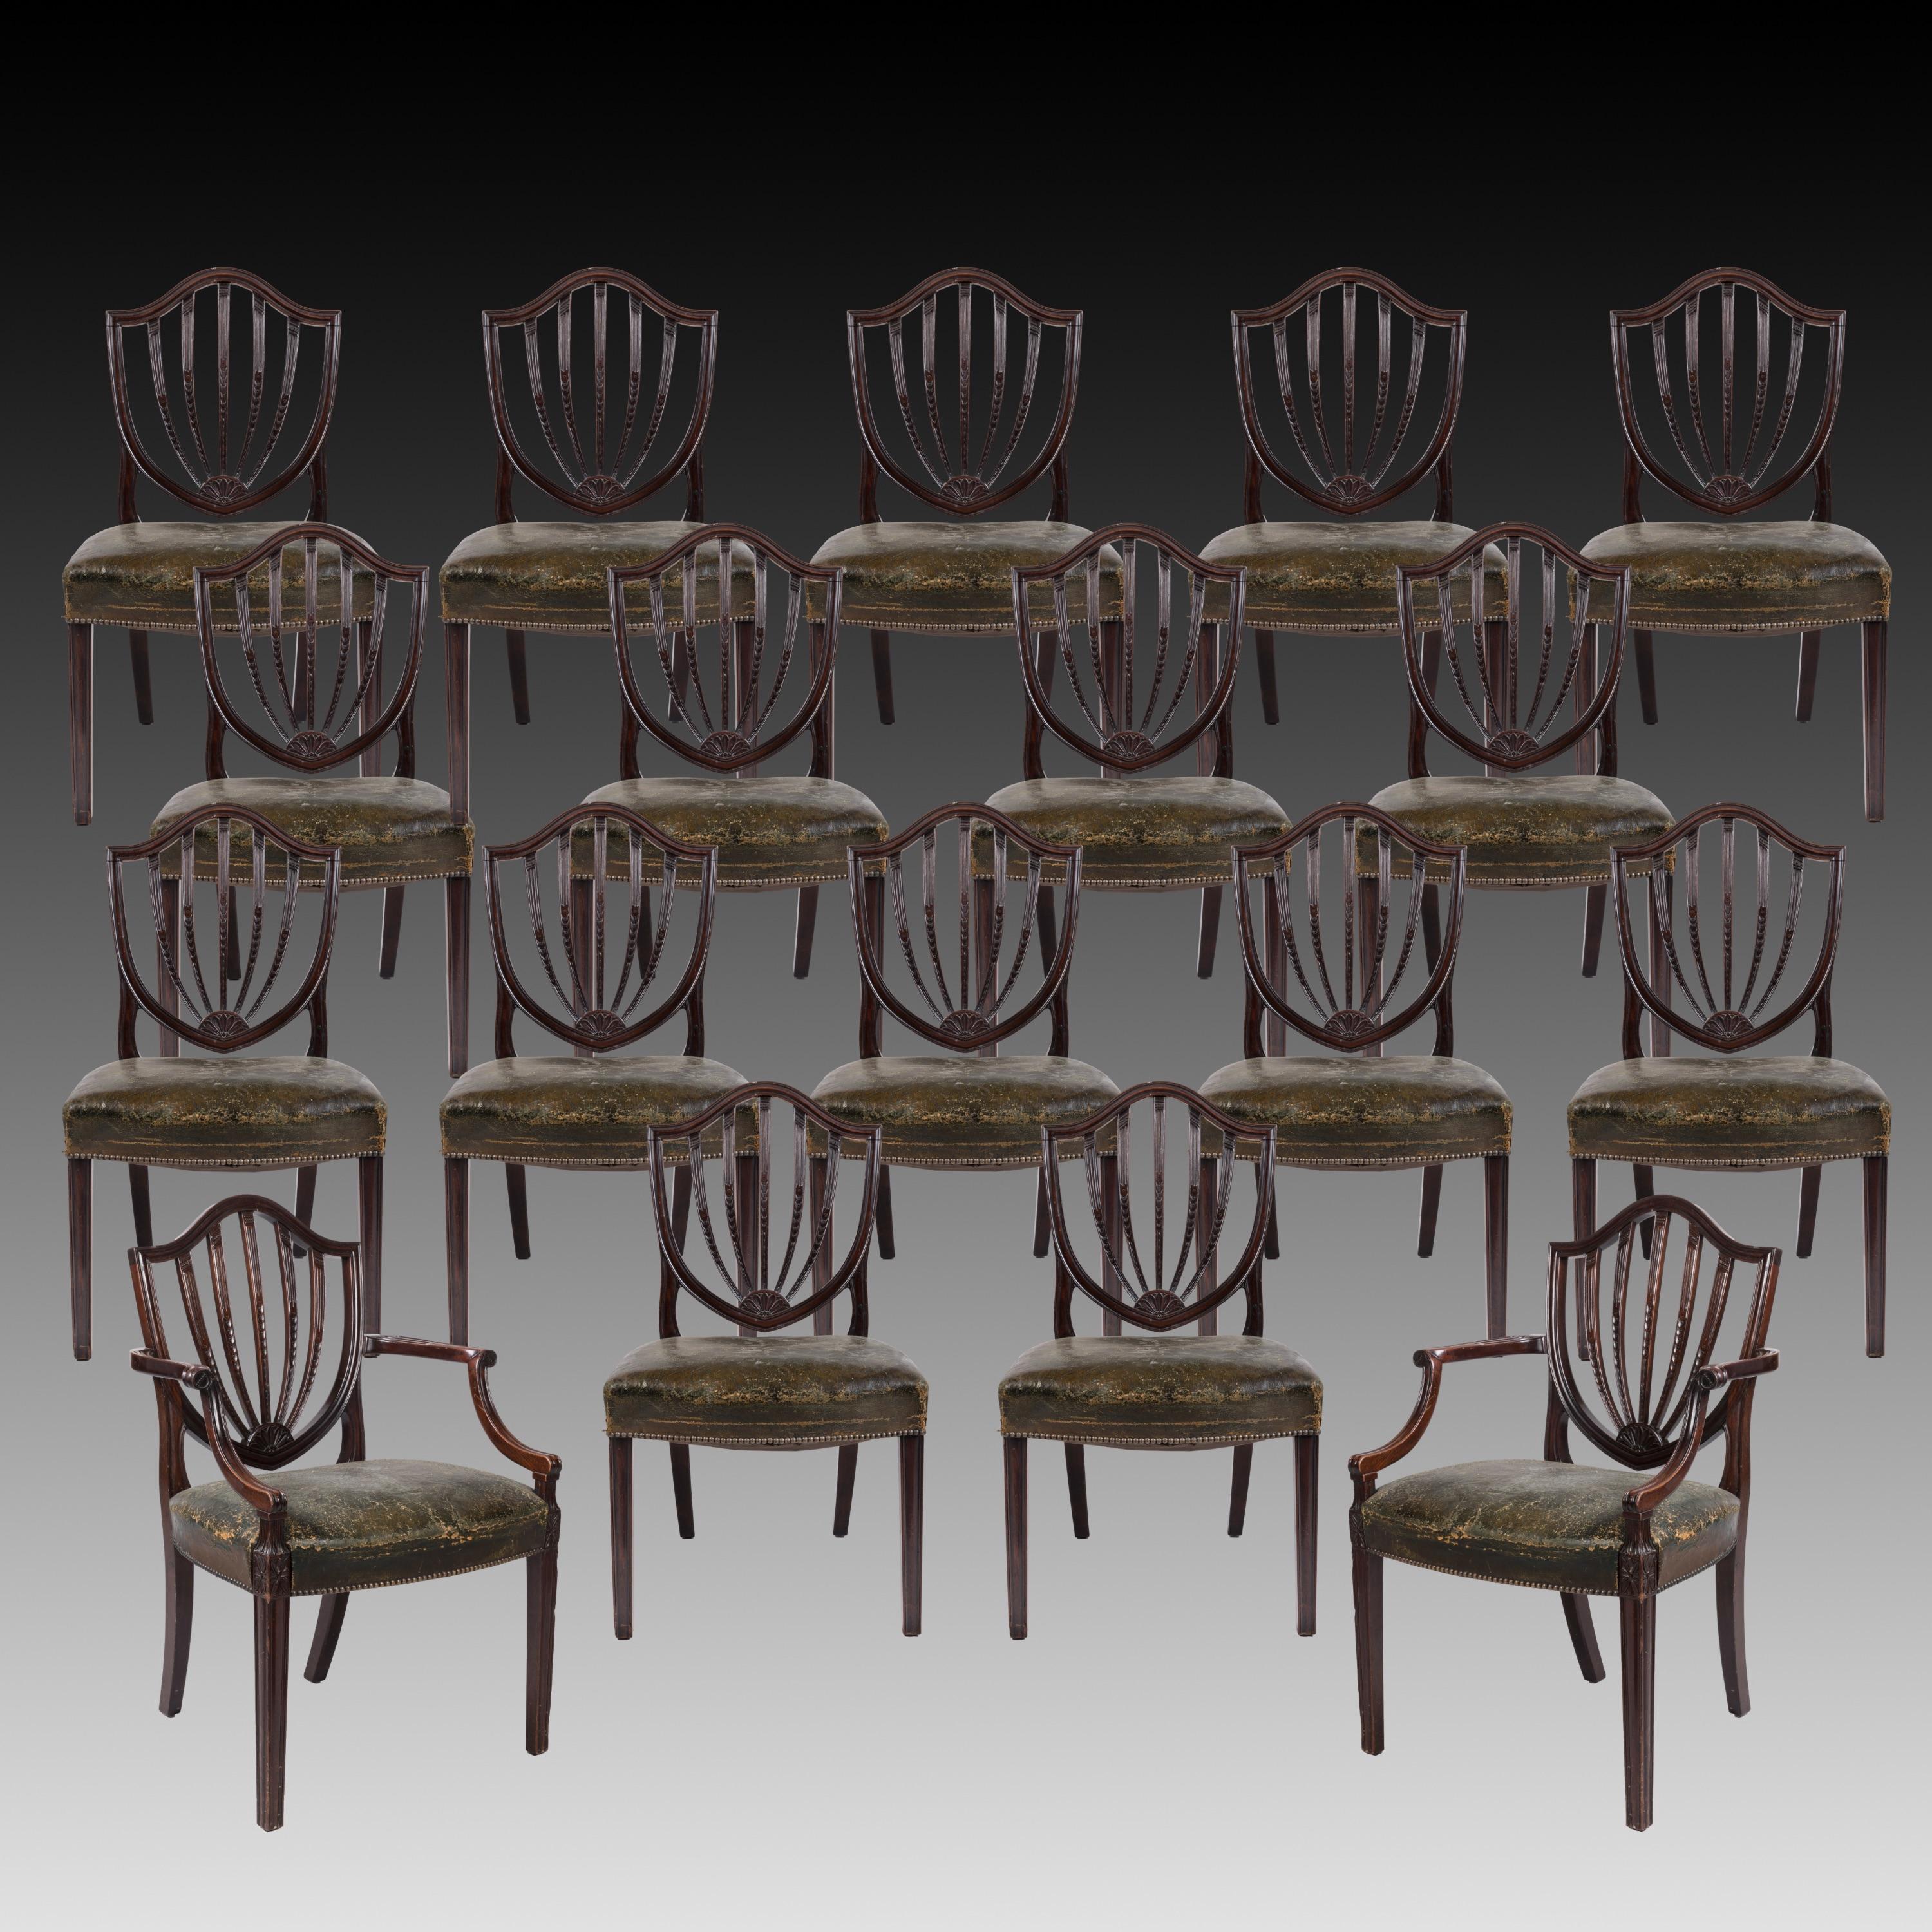 Ein Satz von zwölf Esszimmerstühlen im Stil von George III
Nach dem Entwurf von George Hepplewhite

Die aus Mahagoni geschnitzte Garnitur besteht aus zehn Stühlen und zwei Stühlen mit spitz zulaufenden Vorderbeinen und gespreizten Hinterbeinen; die